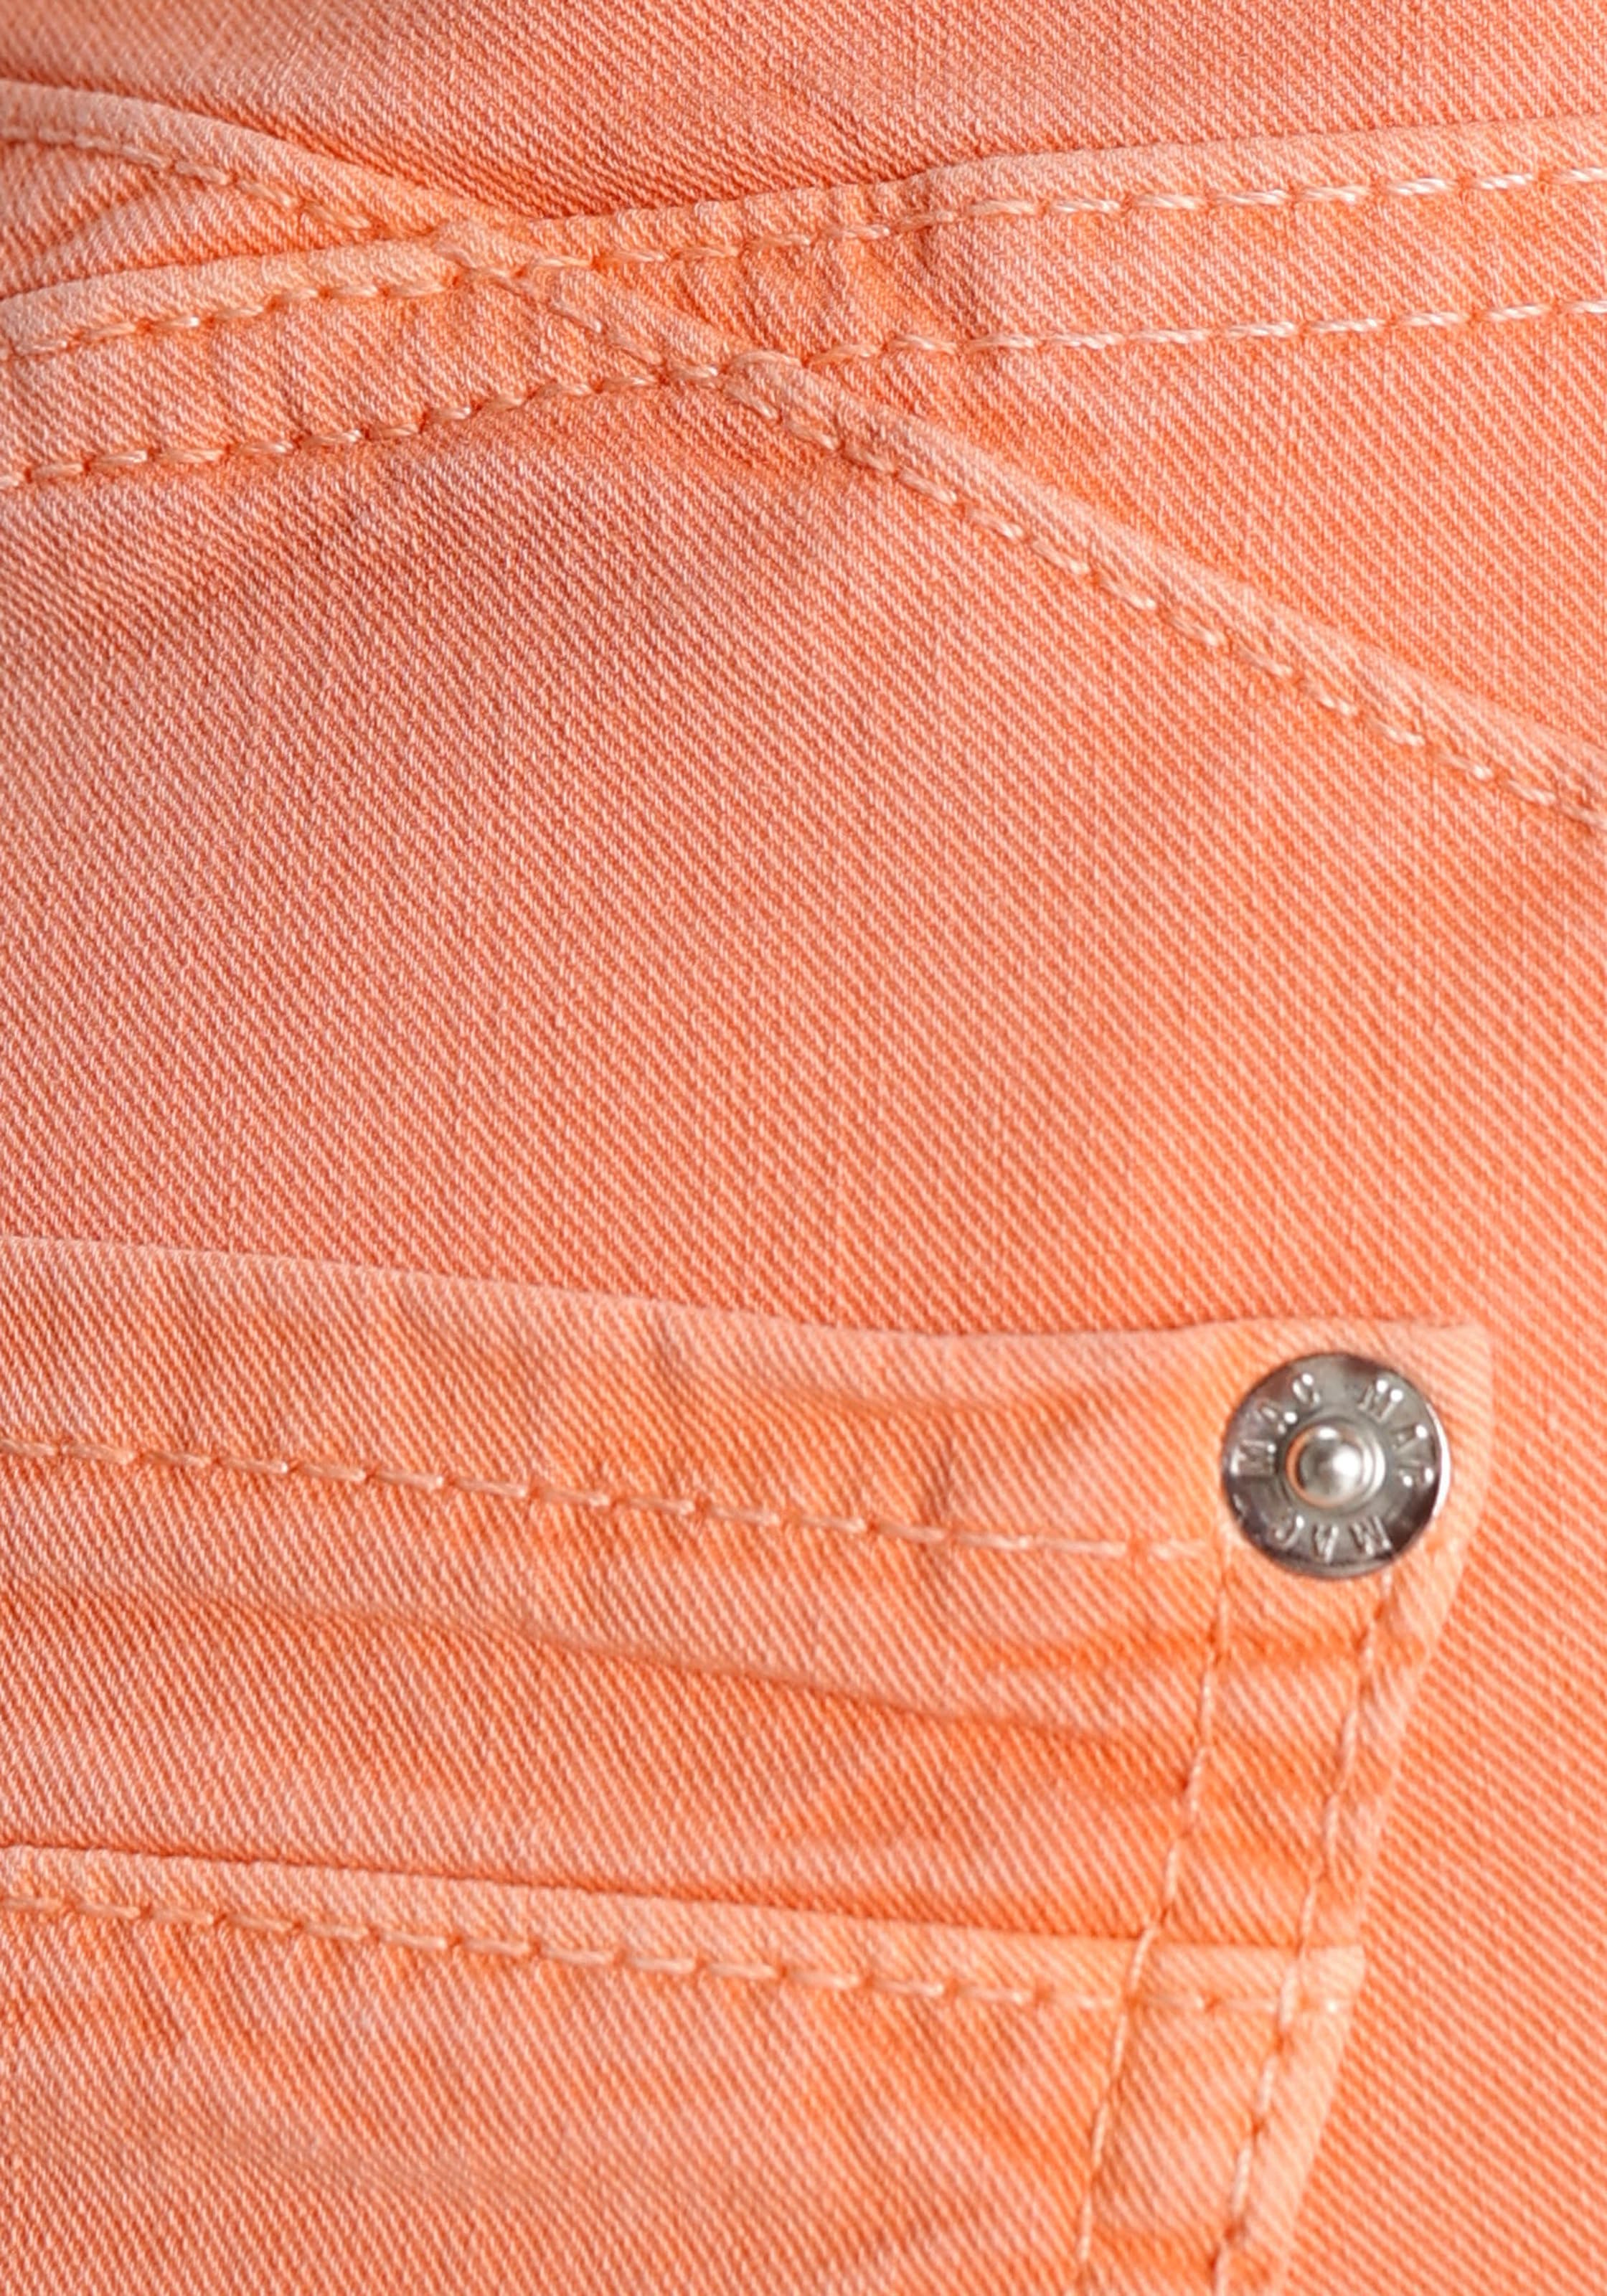 MAC Slim-fit-Jeans »Rich-Chic«, Moderne Form mit Push-Effekt durch figurformende Nähte